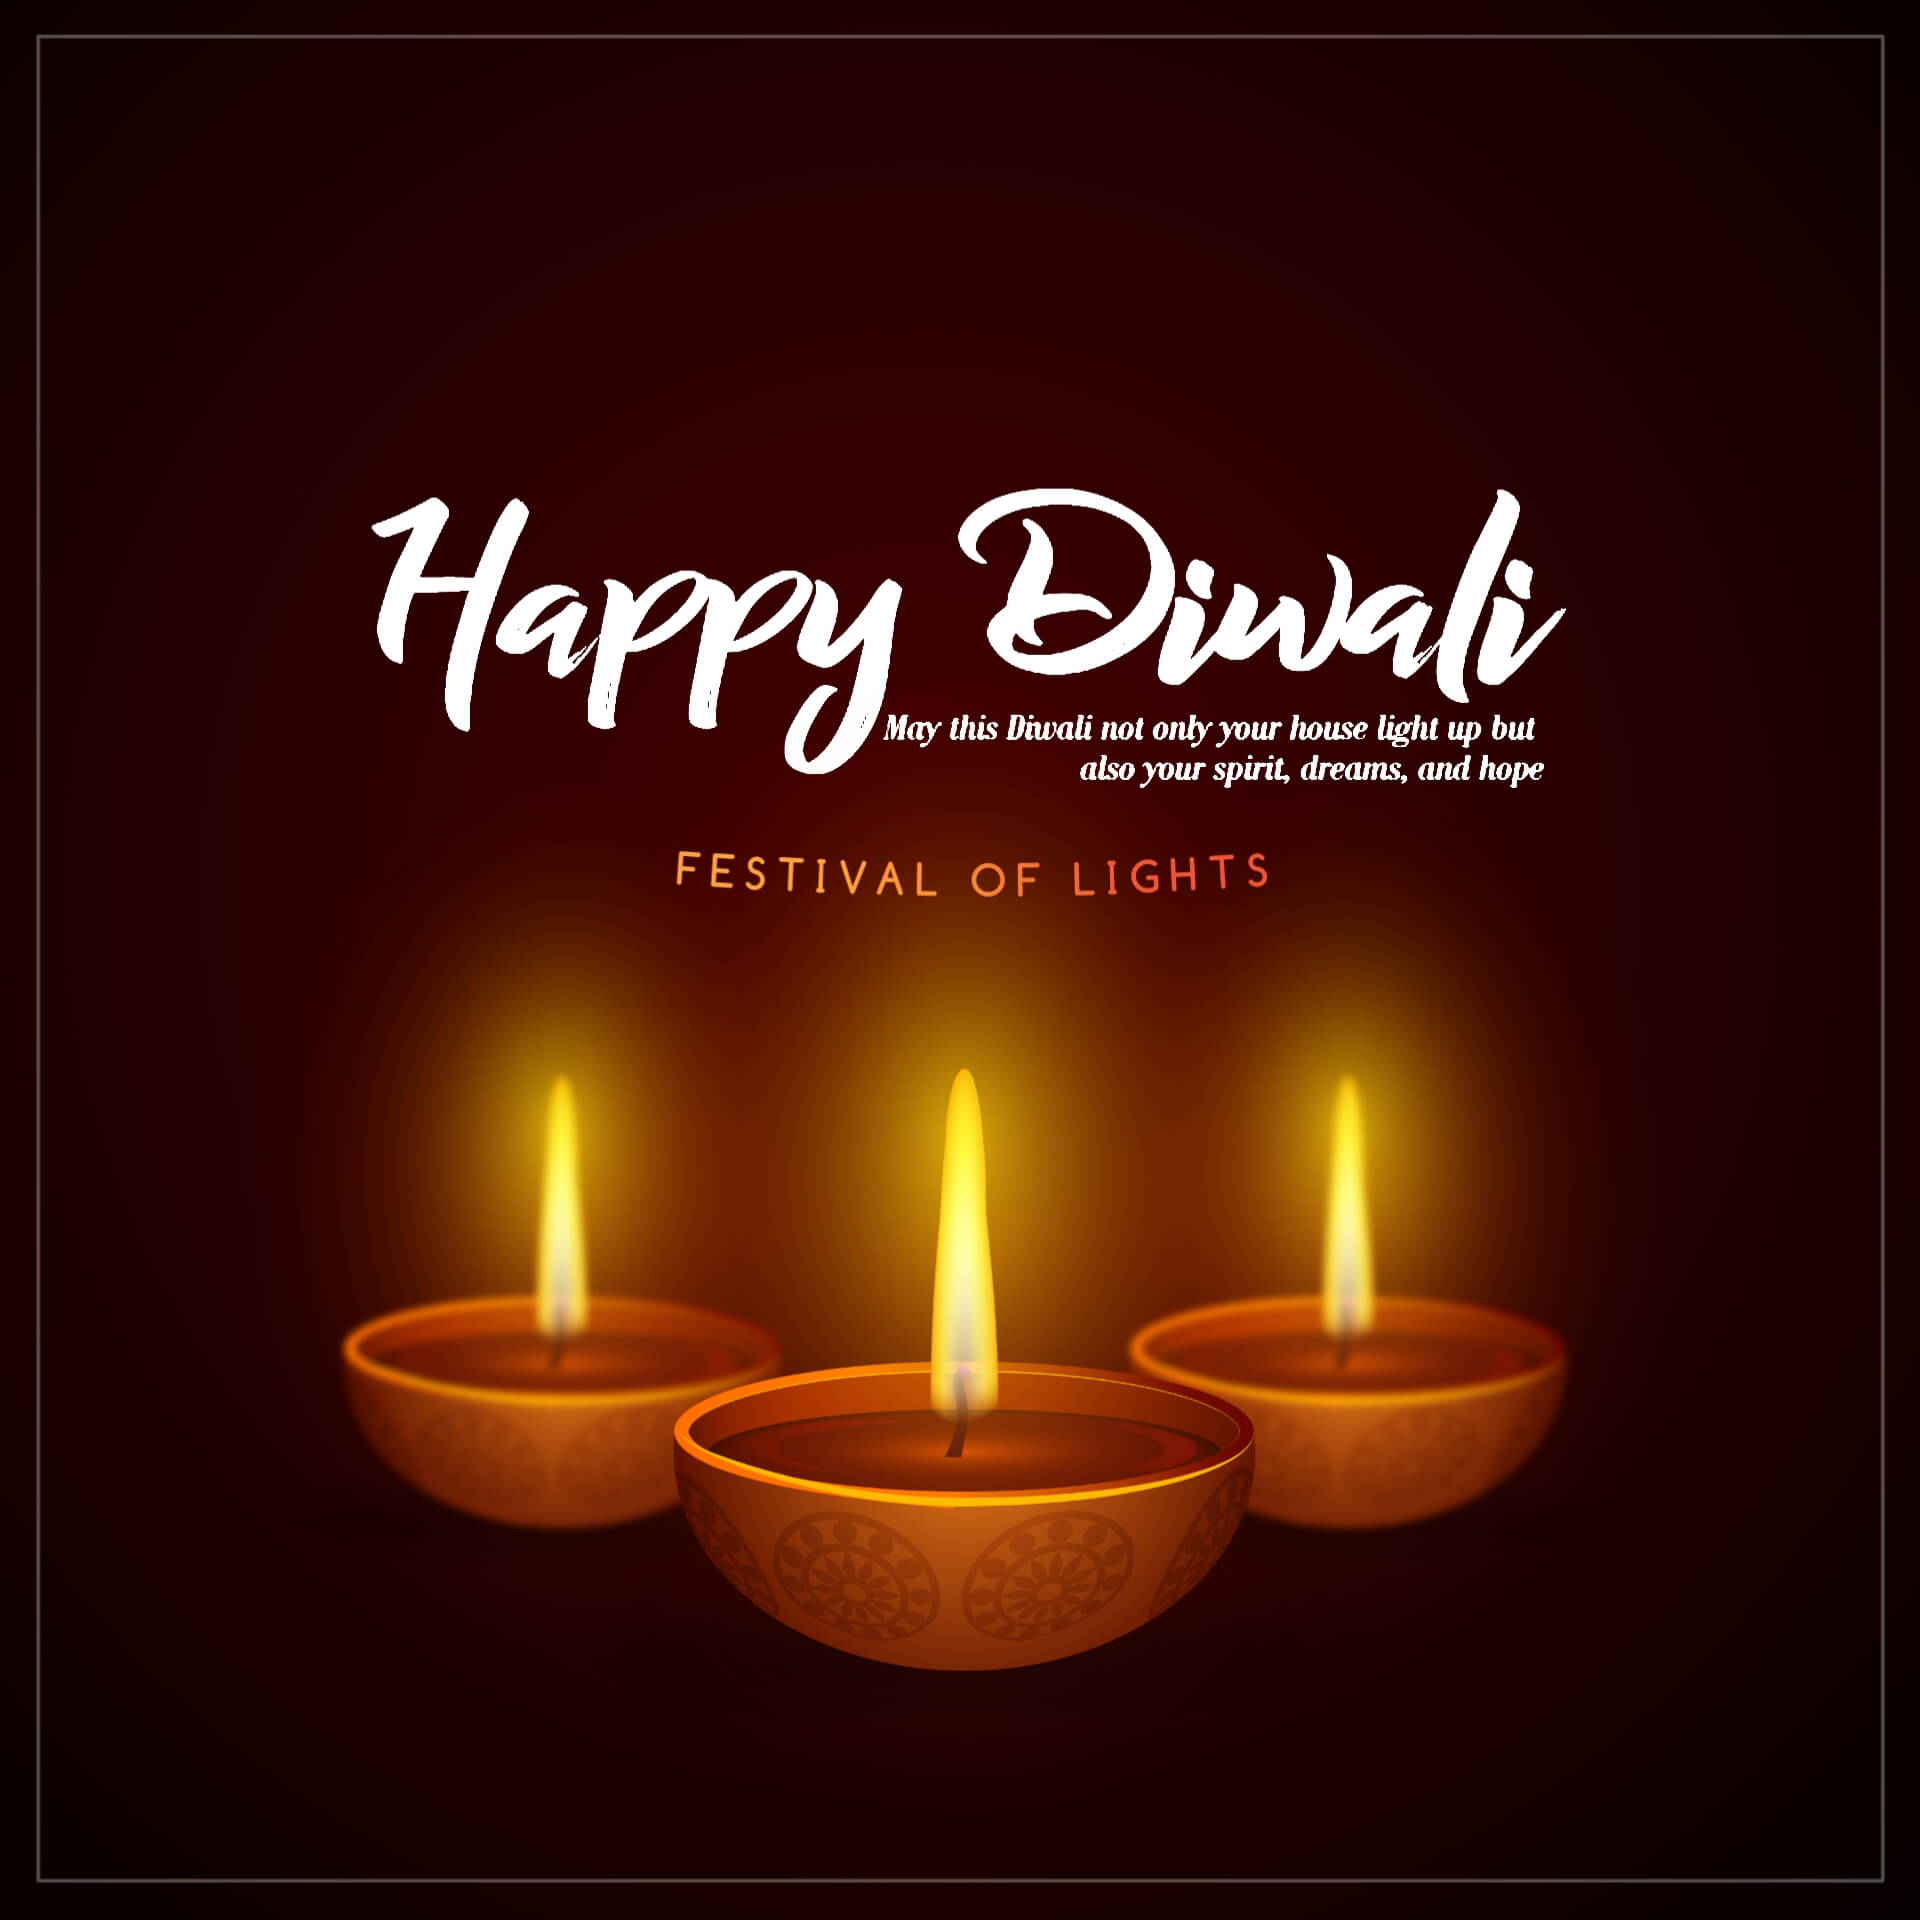 Happy Diwali Image Wishes